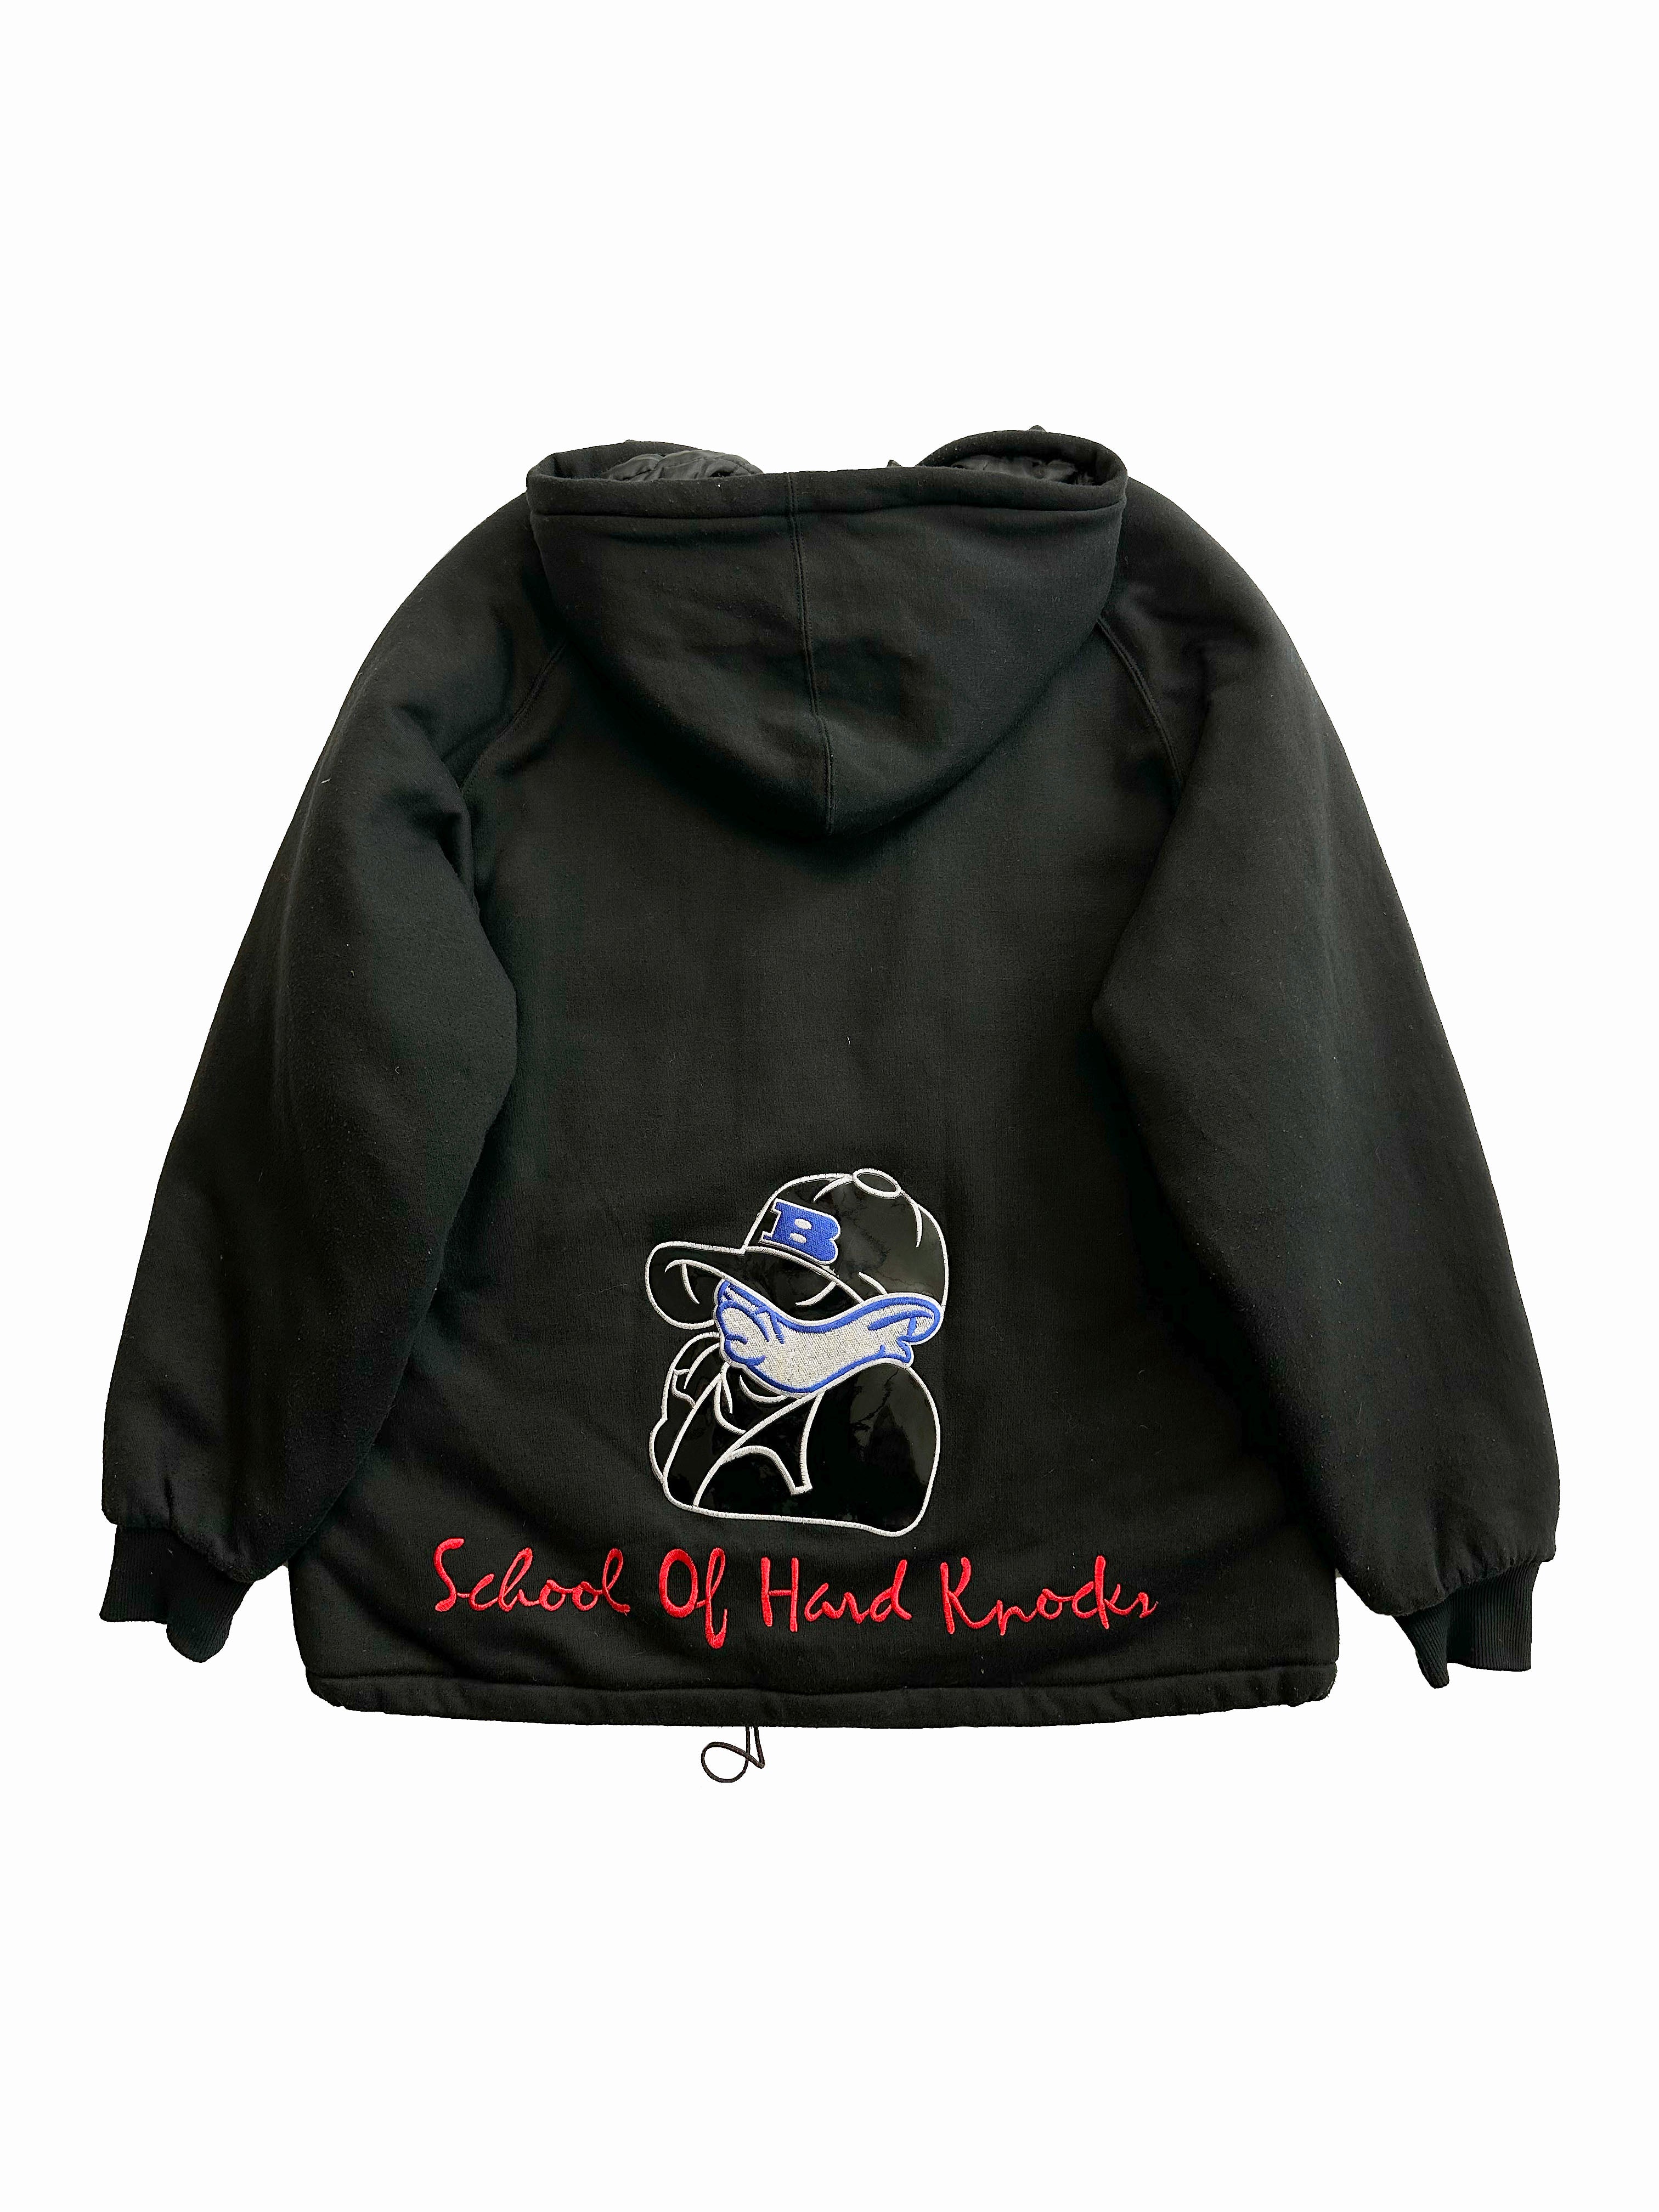 Sohk Black Zip Up Jacket 90's